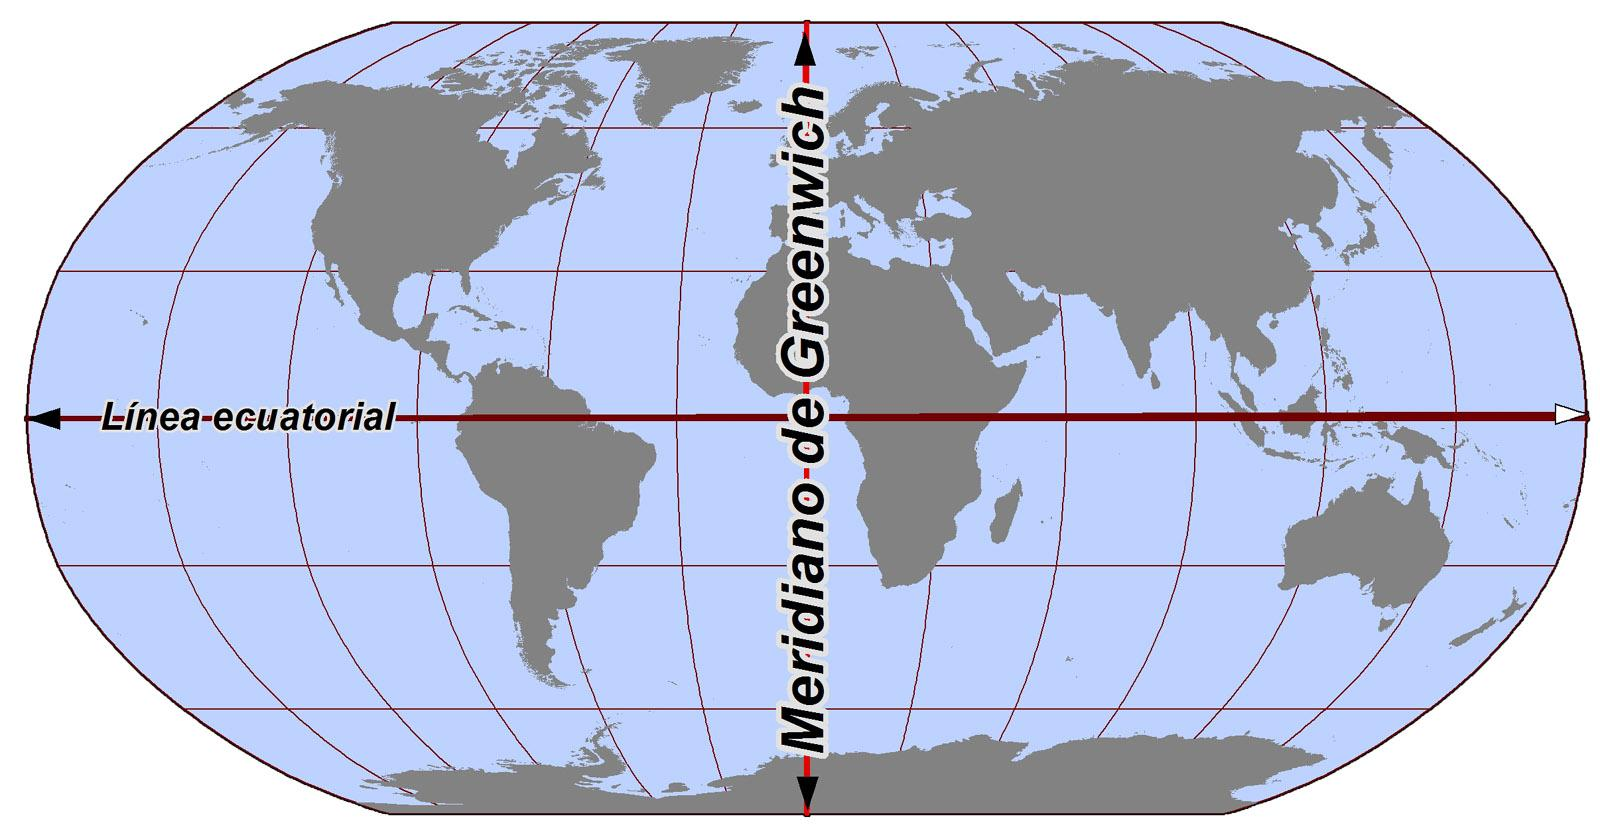 O Meridiano de Greenwich é o meridiano que passa sobre a localidade de Greenwich (Observatório Real, Londres, Reino Unido) e que divide o globo terrestre em ocidente e oriente,